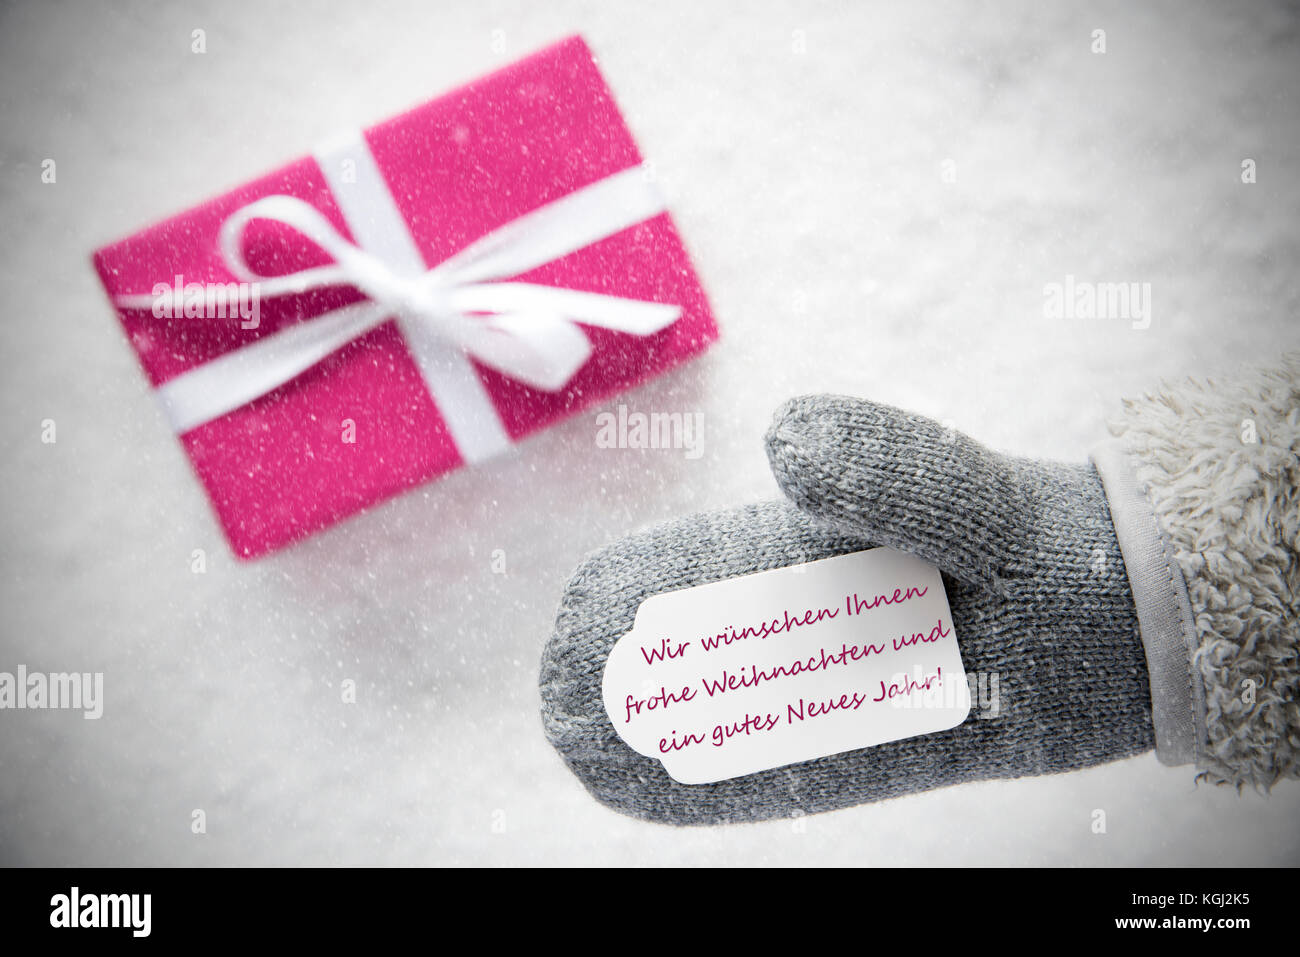 Don rosa, guante, gutes Neues Jahr significa feliz año nuevo, copos de nieve Foto de stock